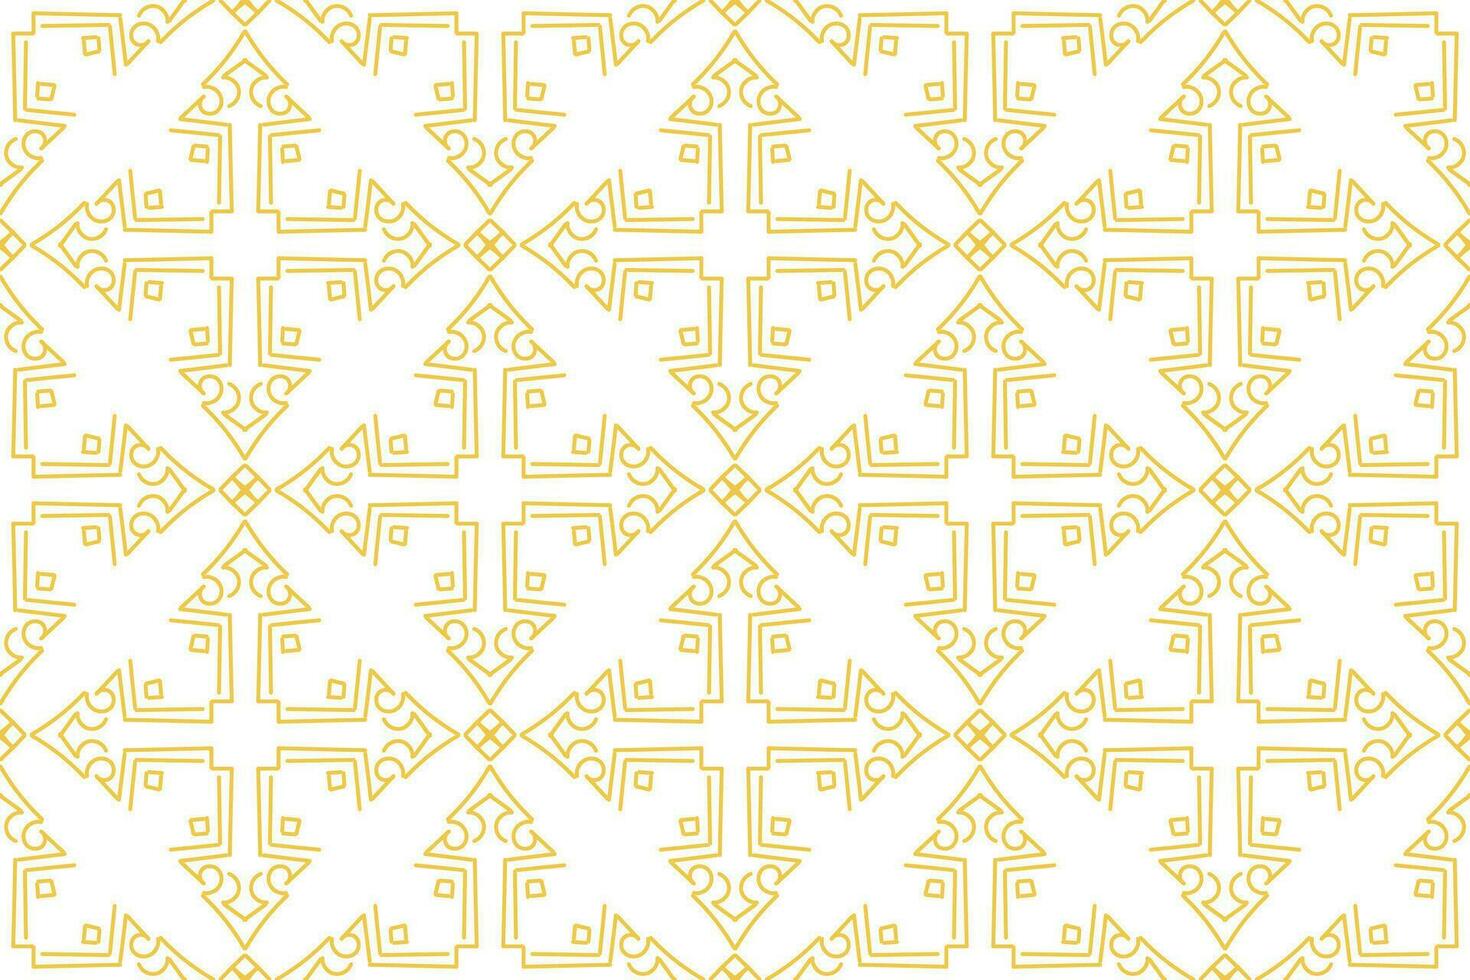 oosters patroon. wit en goud achtergrond met Arabisch ornament. patroon, achtergrond en behang voor uw ontwerp. textiel ornament. vector illustratie.